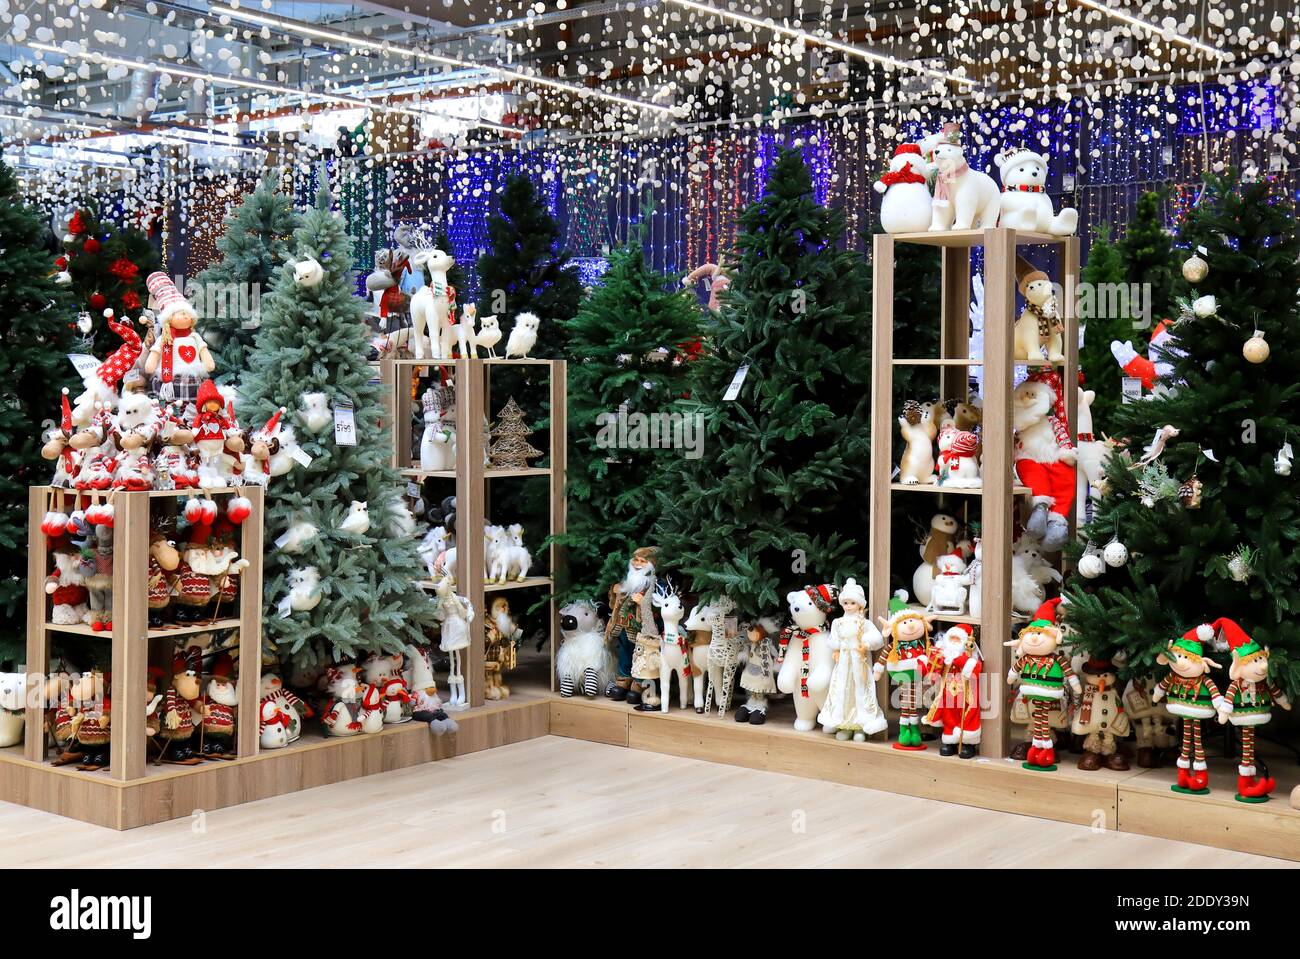 Hermoso árbol de Navidad y año Nuevo, juguetes, decoraciones en tienda de juguetes. Divertido Santa Claus, muñecos de nieve, muñecas en el supermercado. Festiva Navidad feria de invierno Foto de stock